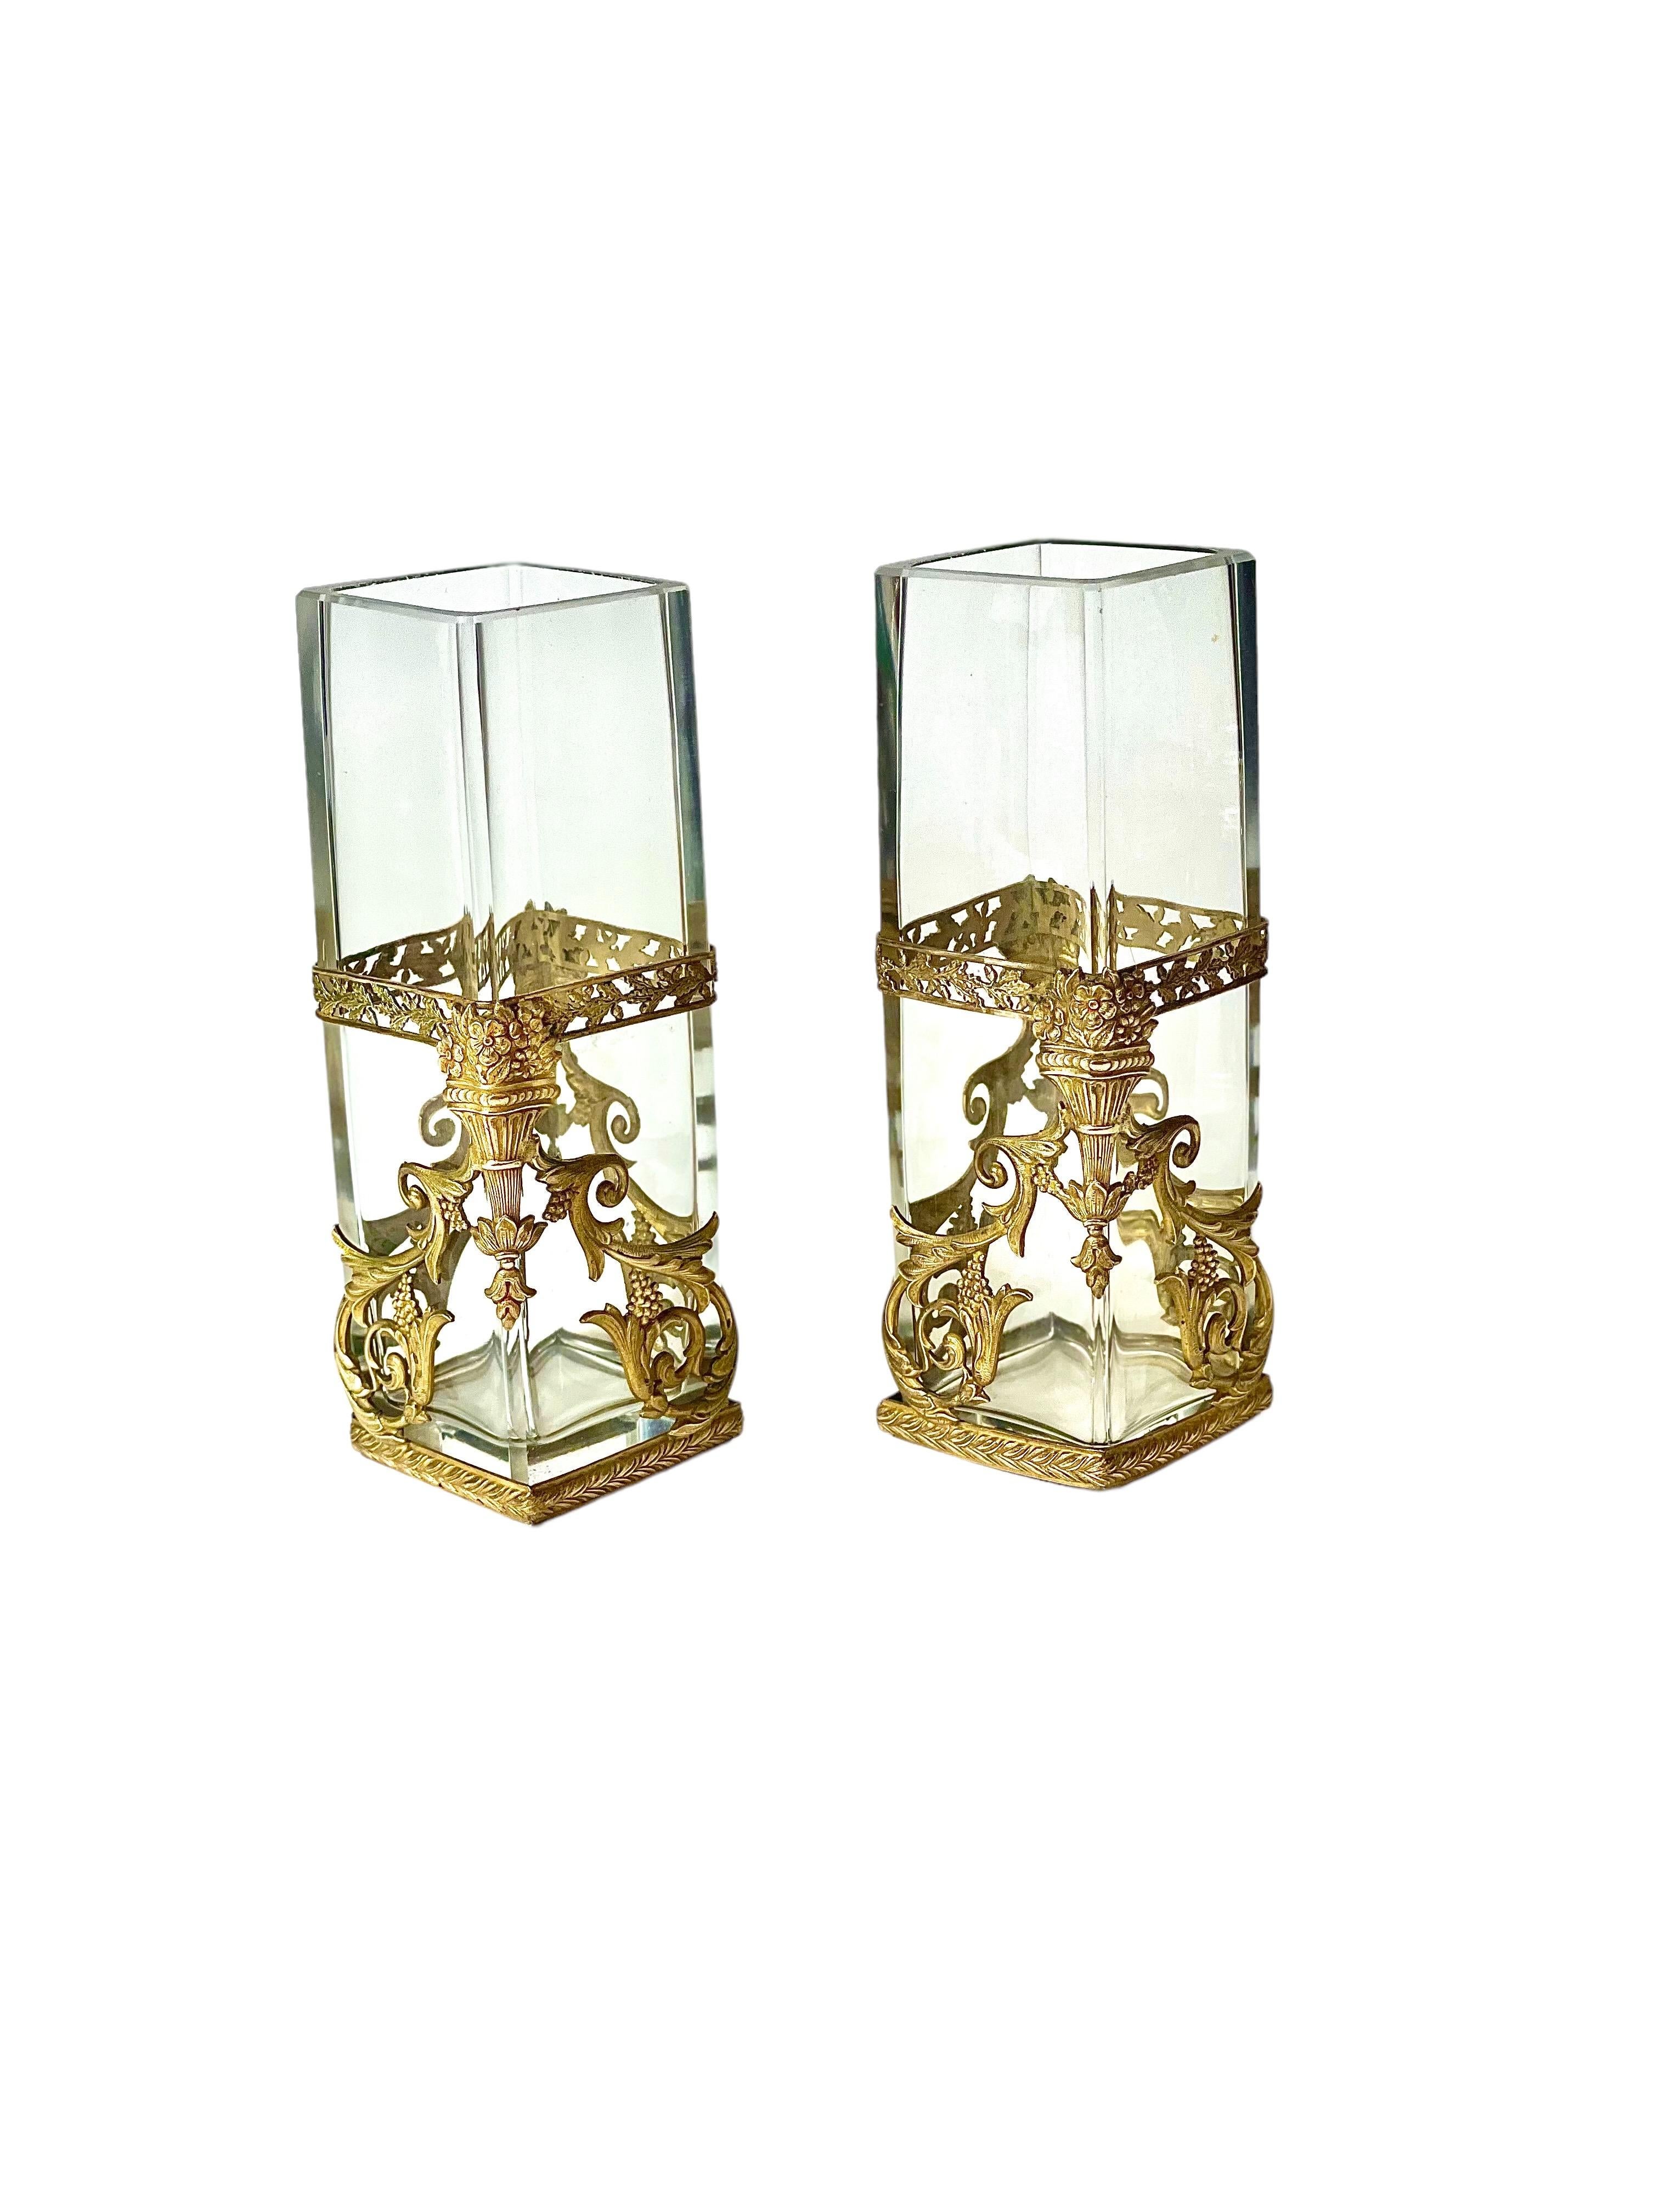 Ein sehr hübsches Paar viereckiger Glasvasen, verziert mit außergewöhnlich detaillierten, vergoldeten Messingbeschlägen im Louis-XVI-Stil. Diese Vasen stammen aus der Zeit um 1900 und sind in ausgezeichnetem Zustand.